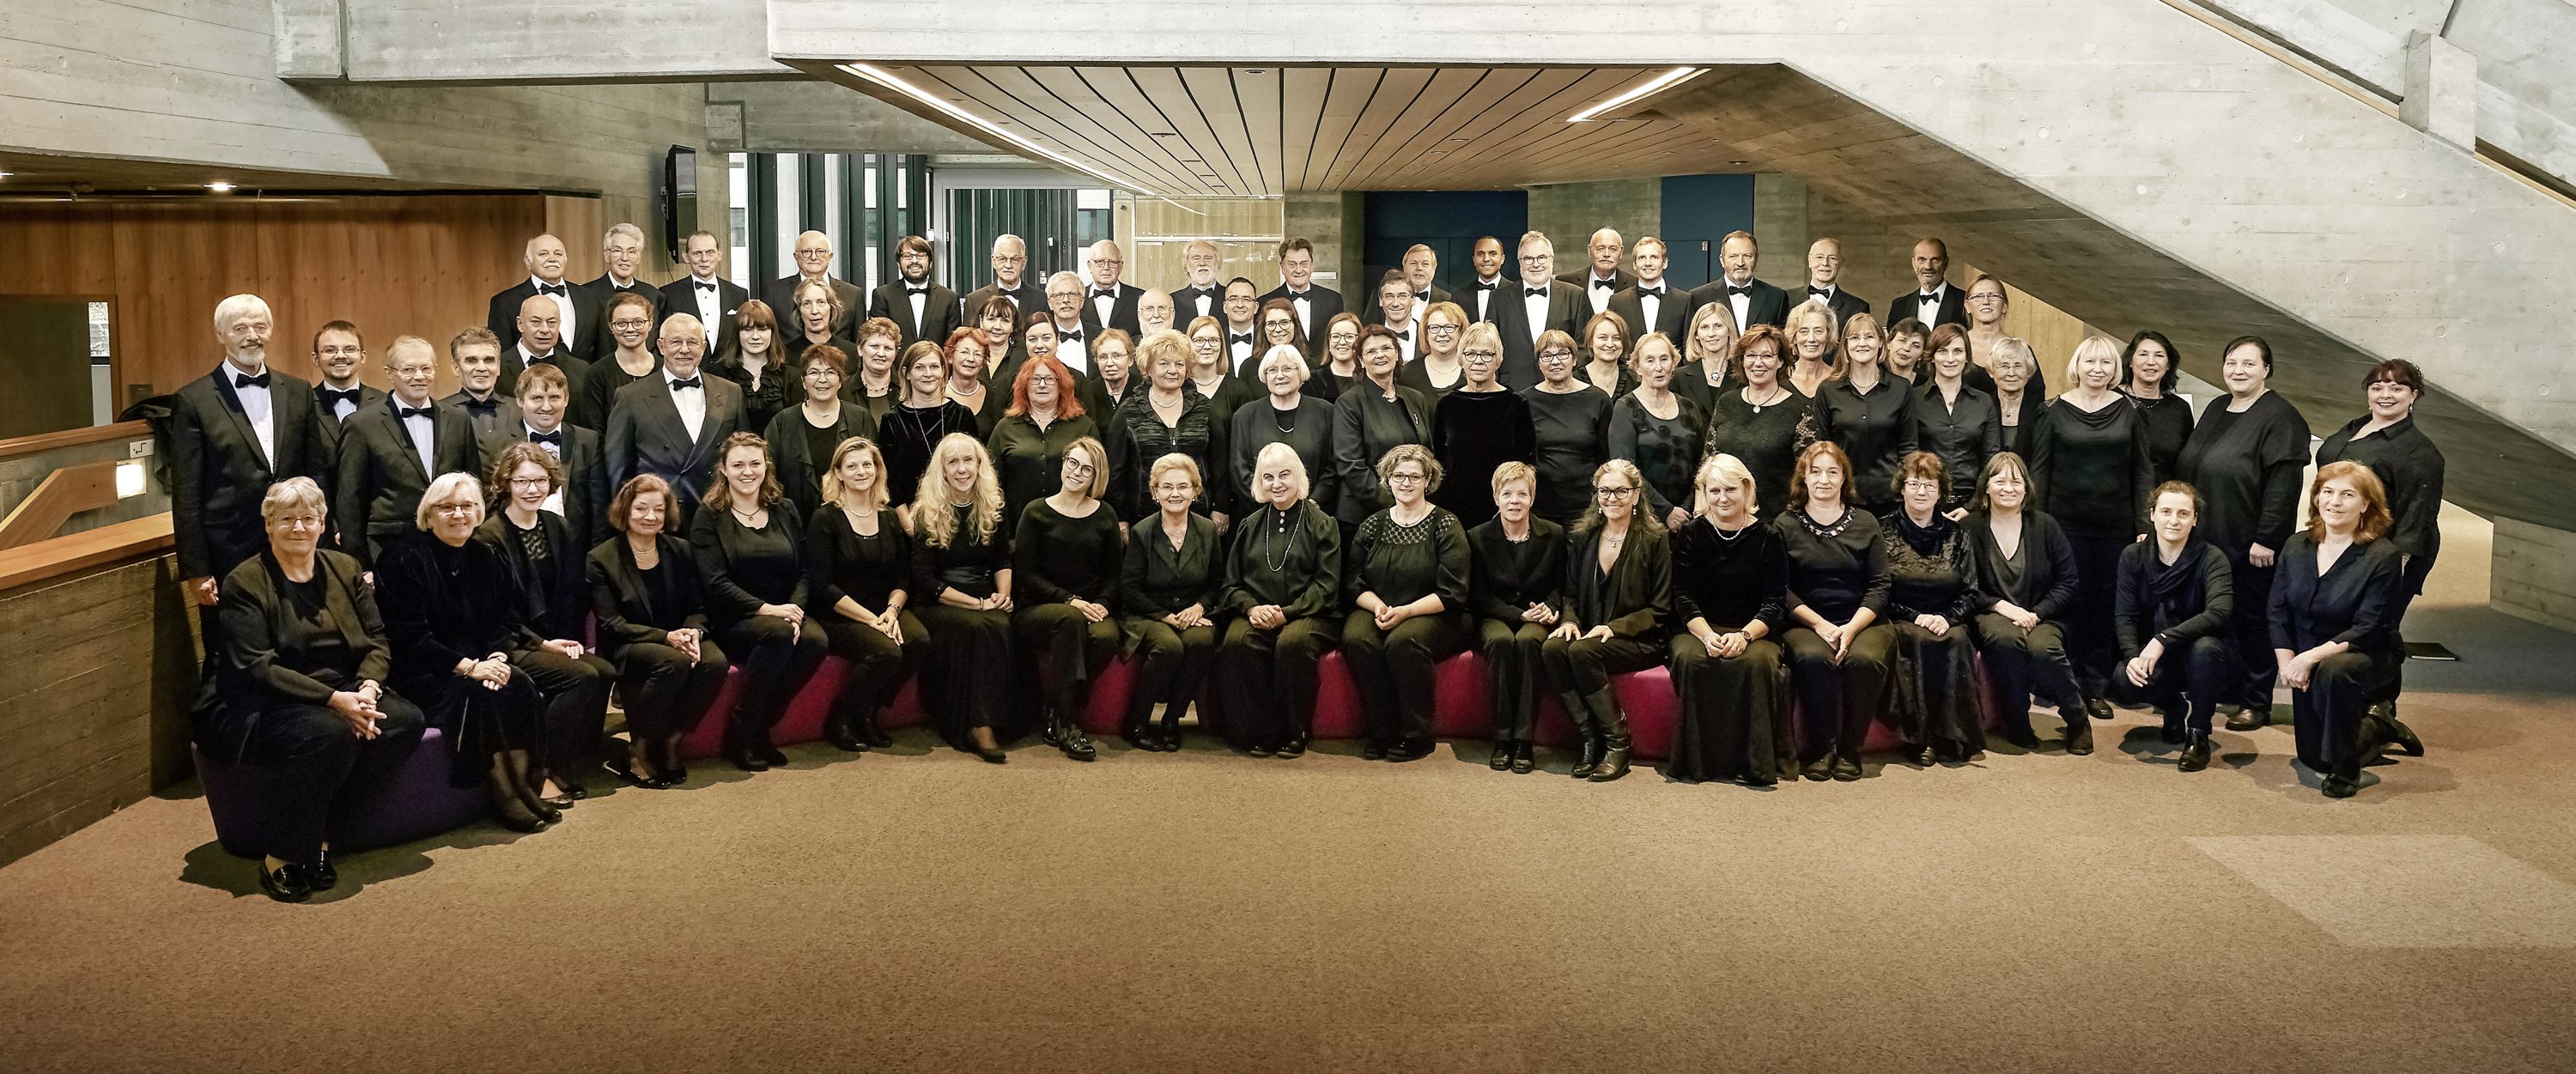 Philharmonischer Chor Augsburg, 18.11.2017